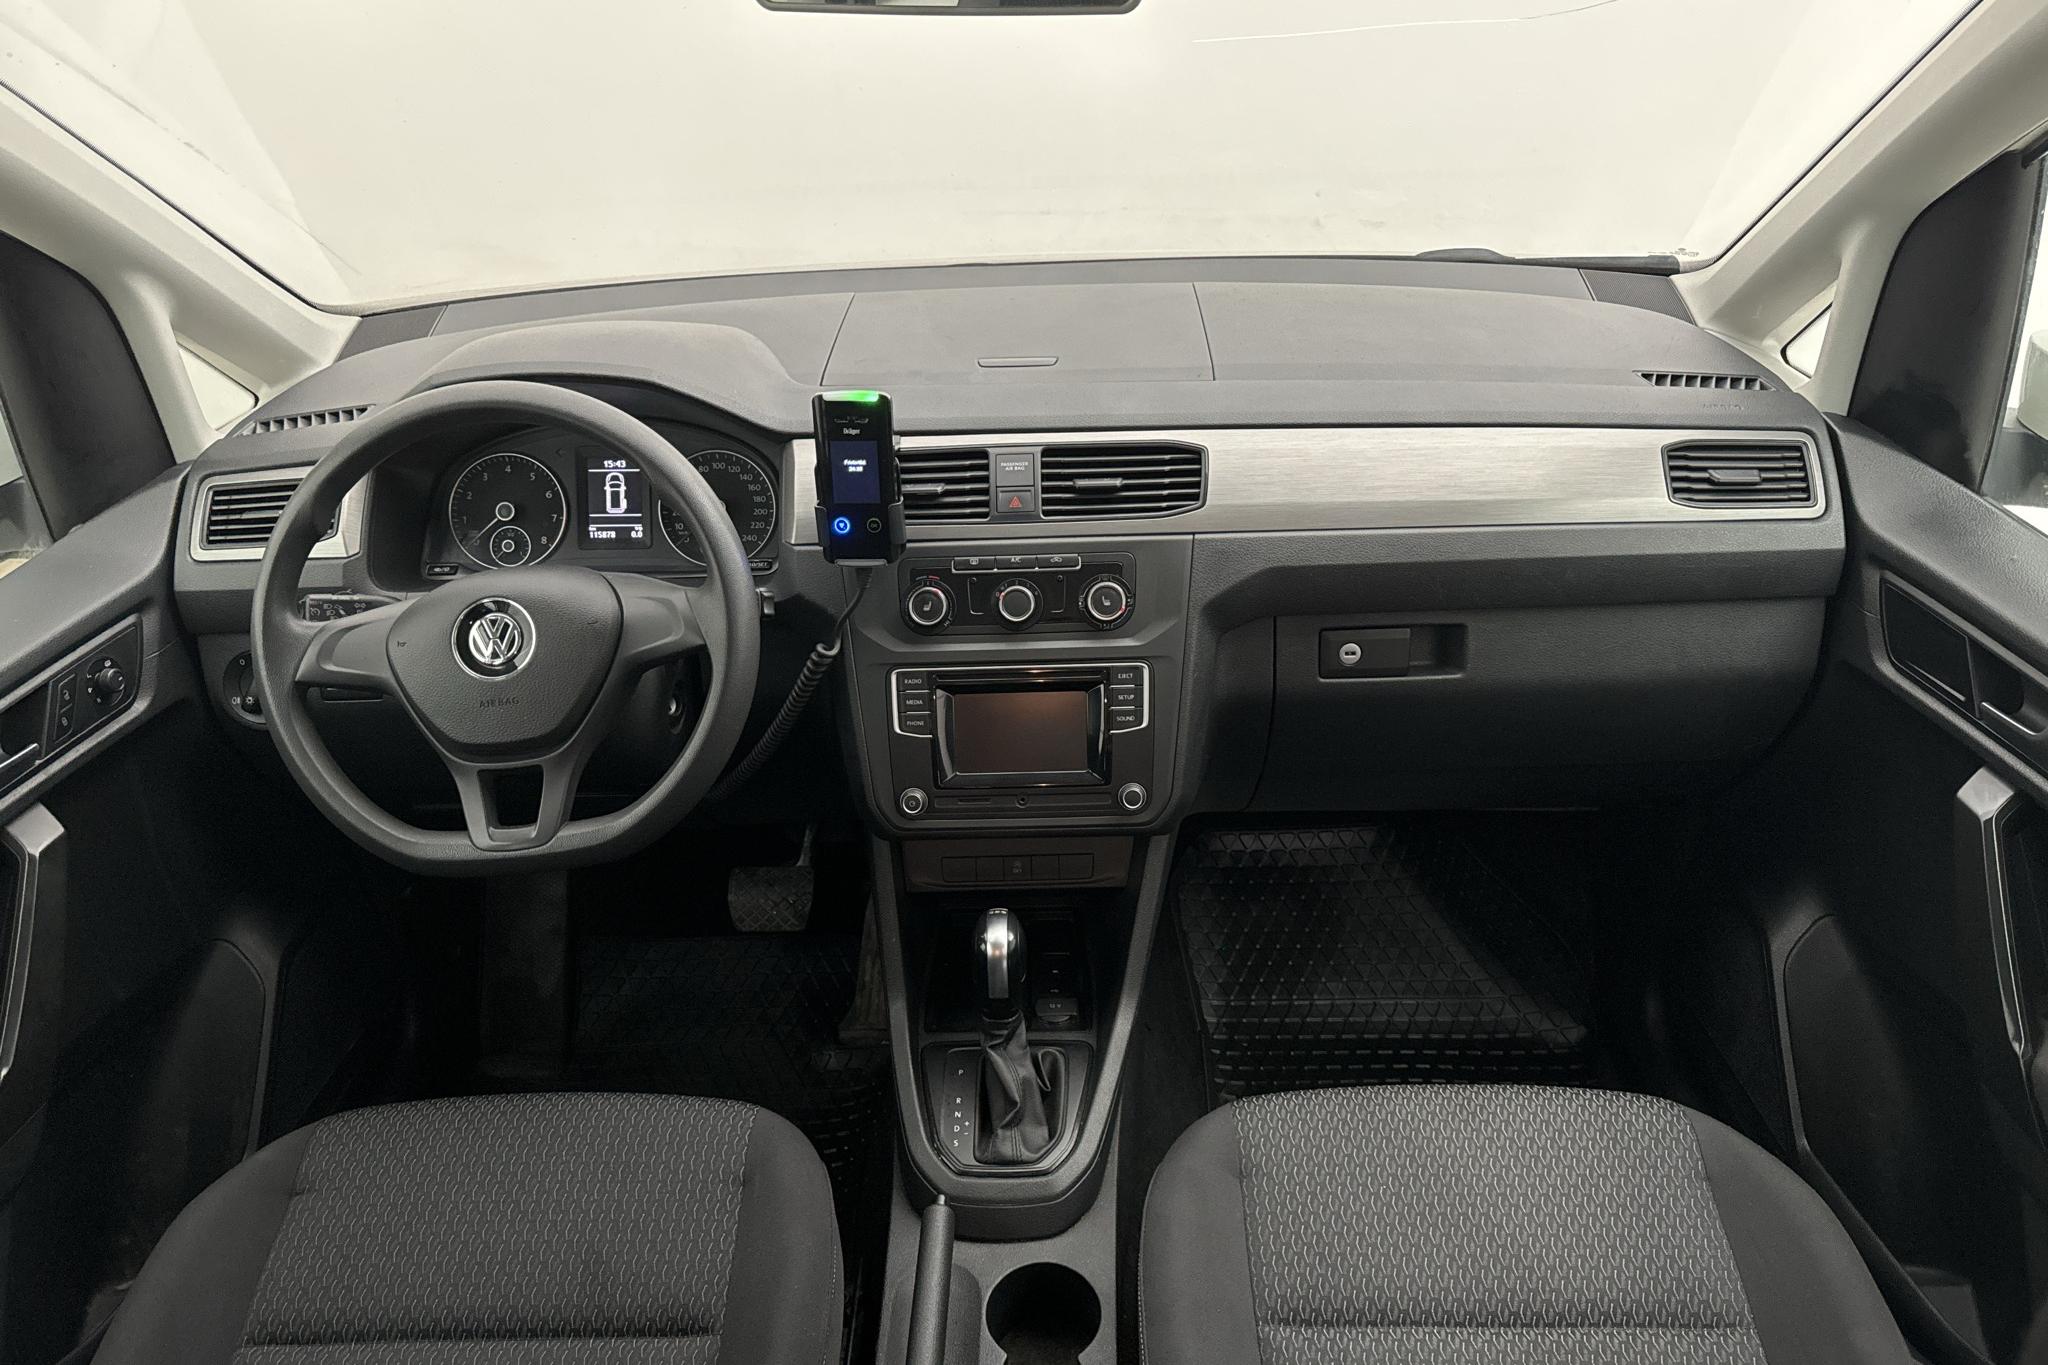 VW Caddy Life Maxi 1.4 TGI (110hk) - 11 588 mil - Automat - vit - 2018